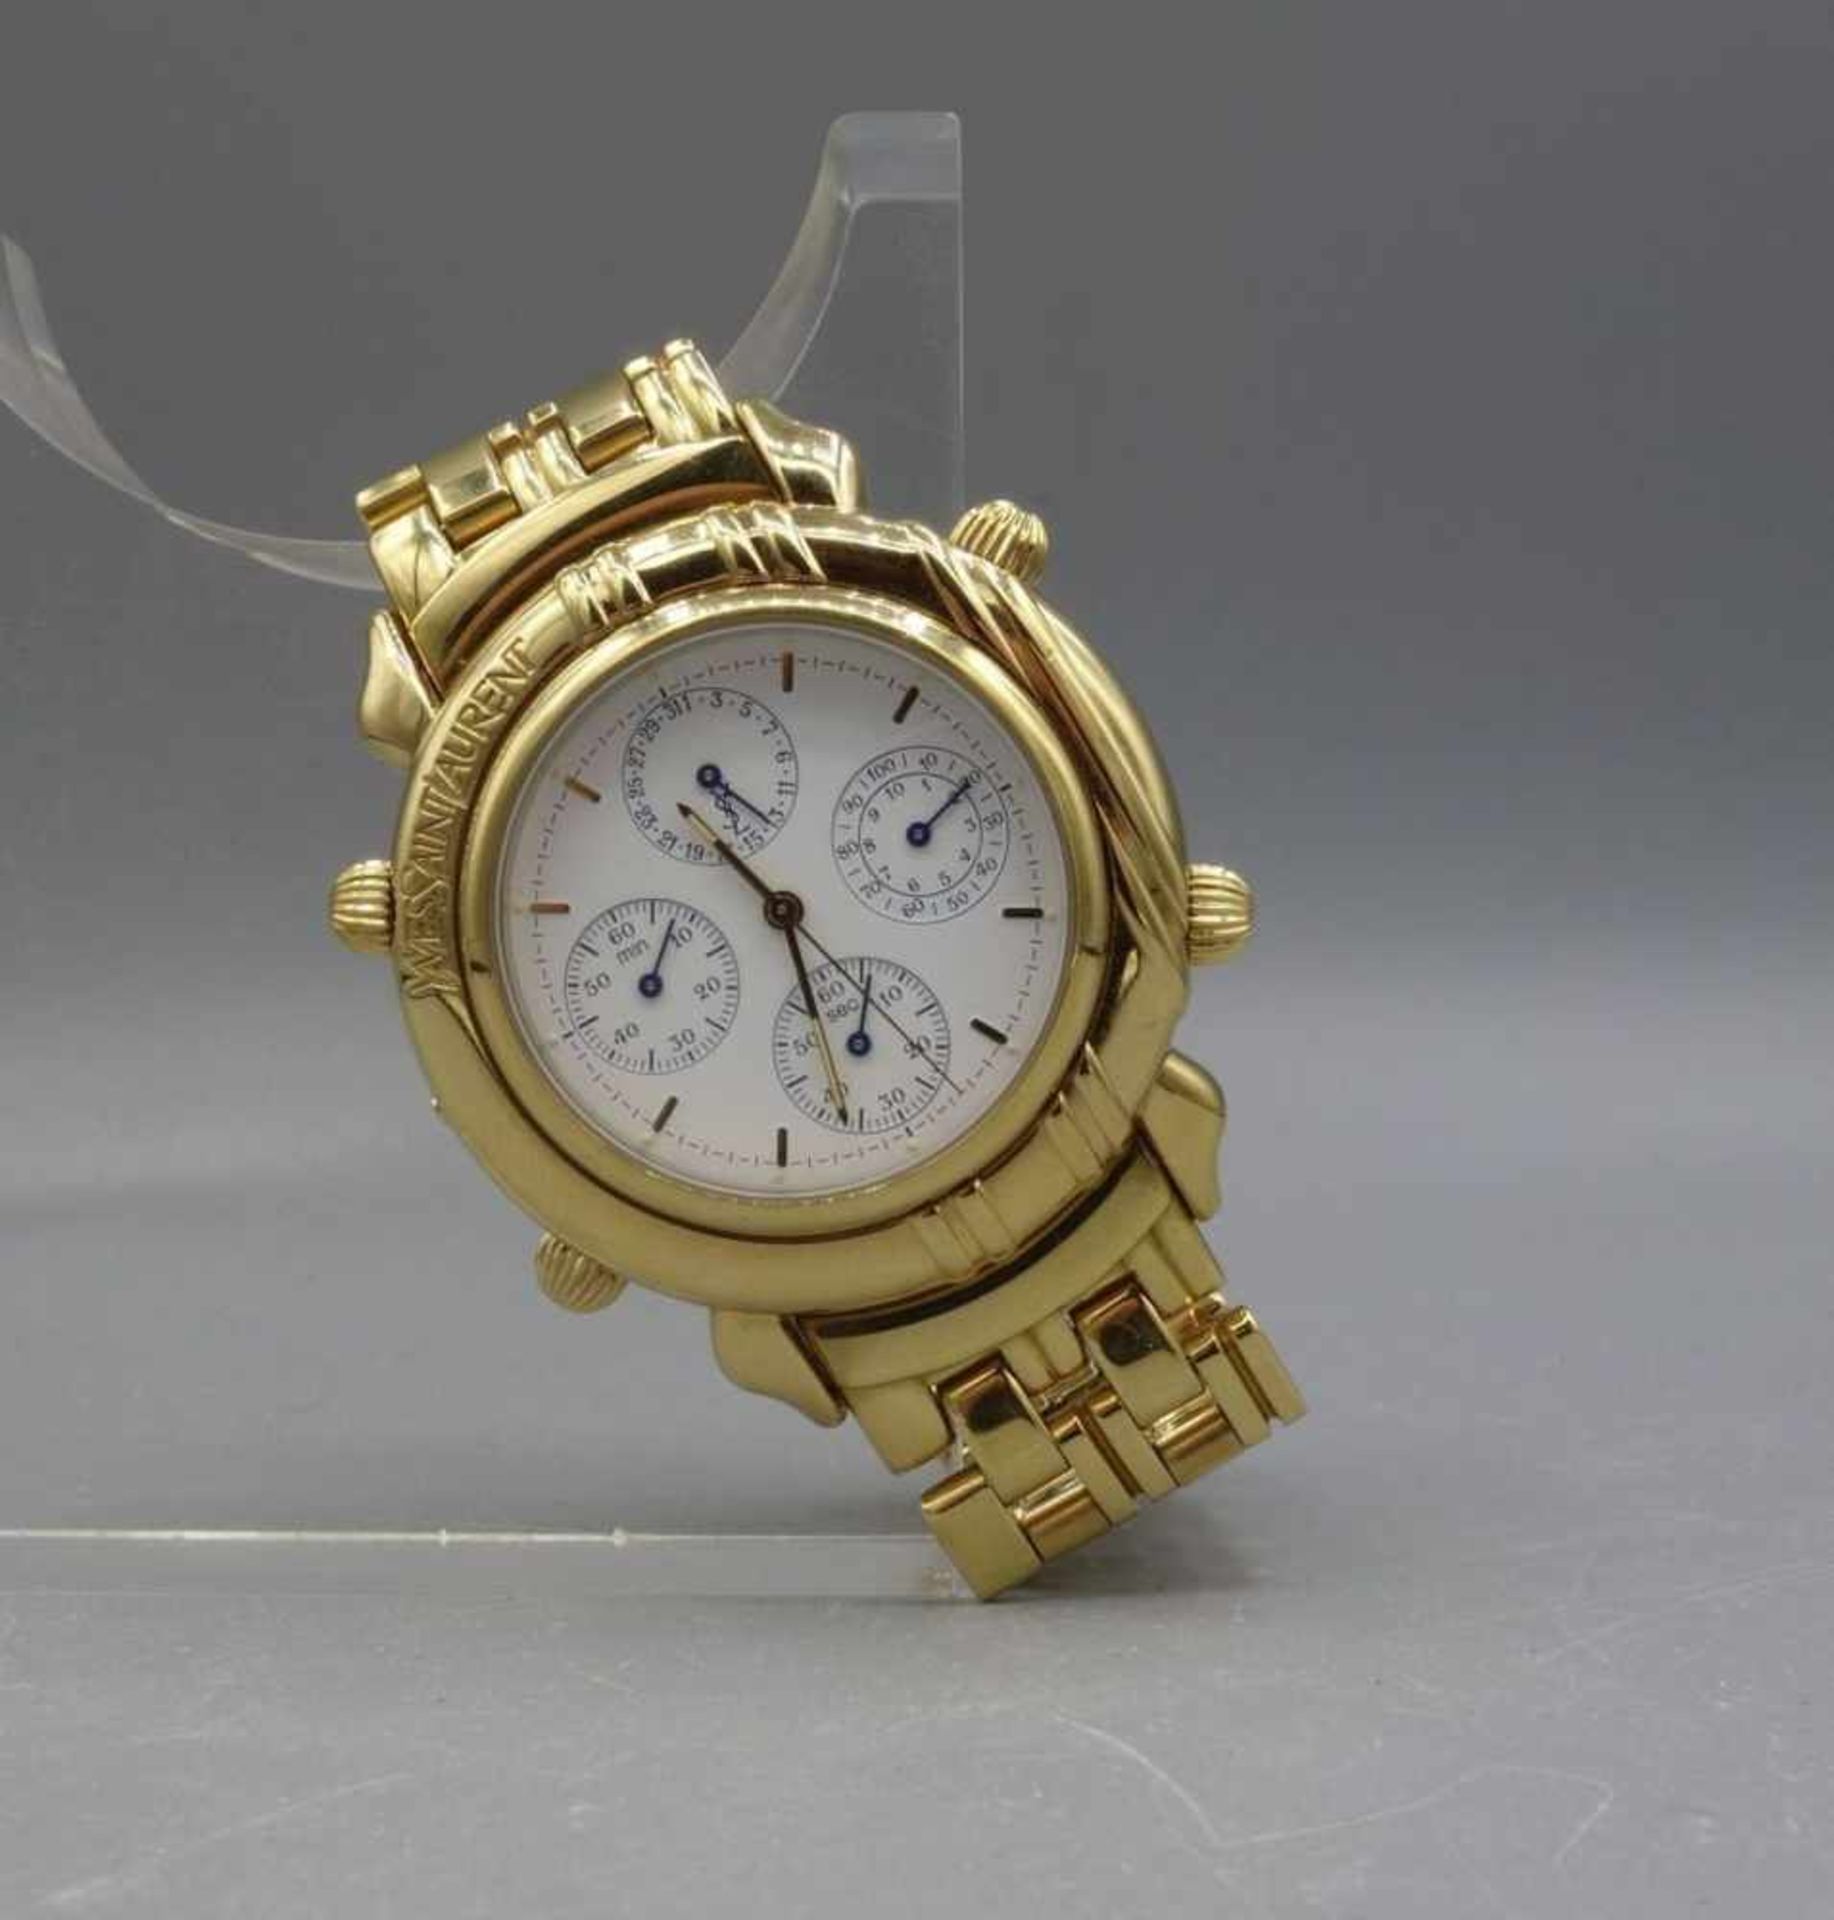 ARMBANDUHR / CHRONOGRAPH - YVES SAINT LAURENT / wristwatch, Quartz. Uhr aus der Yves Saint Laurent - Image 4 of 7